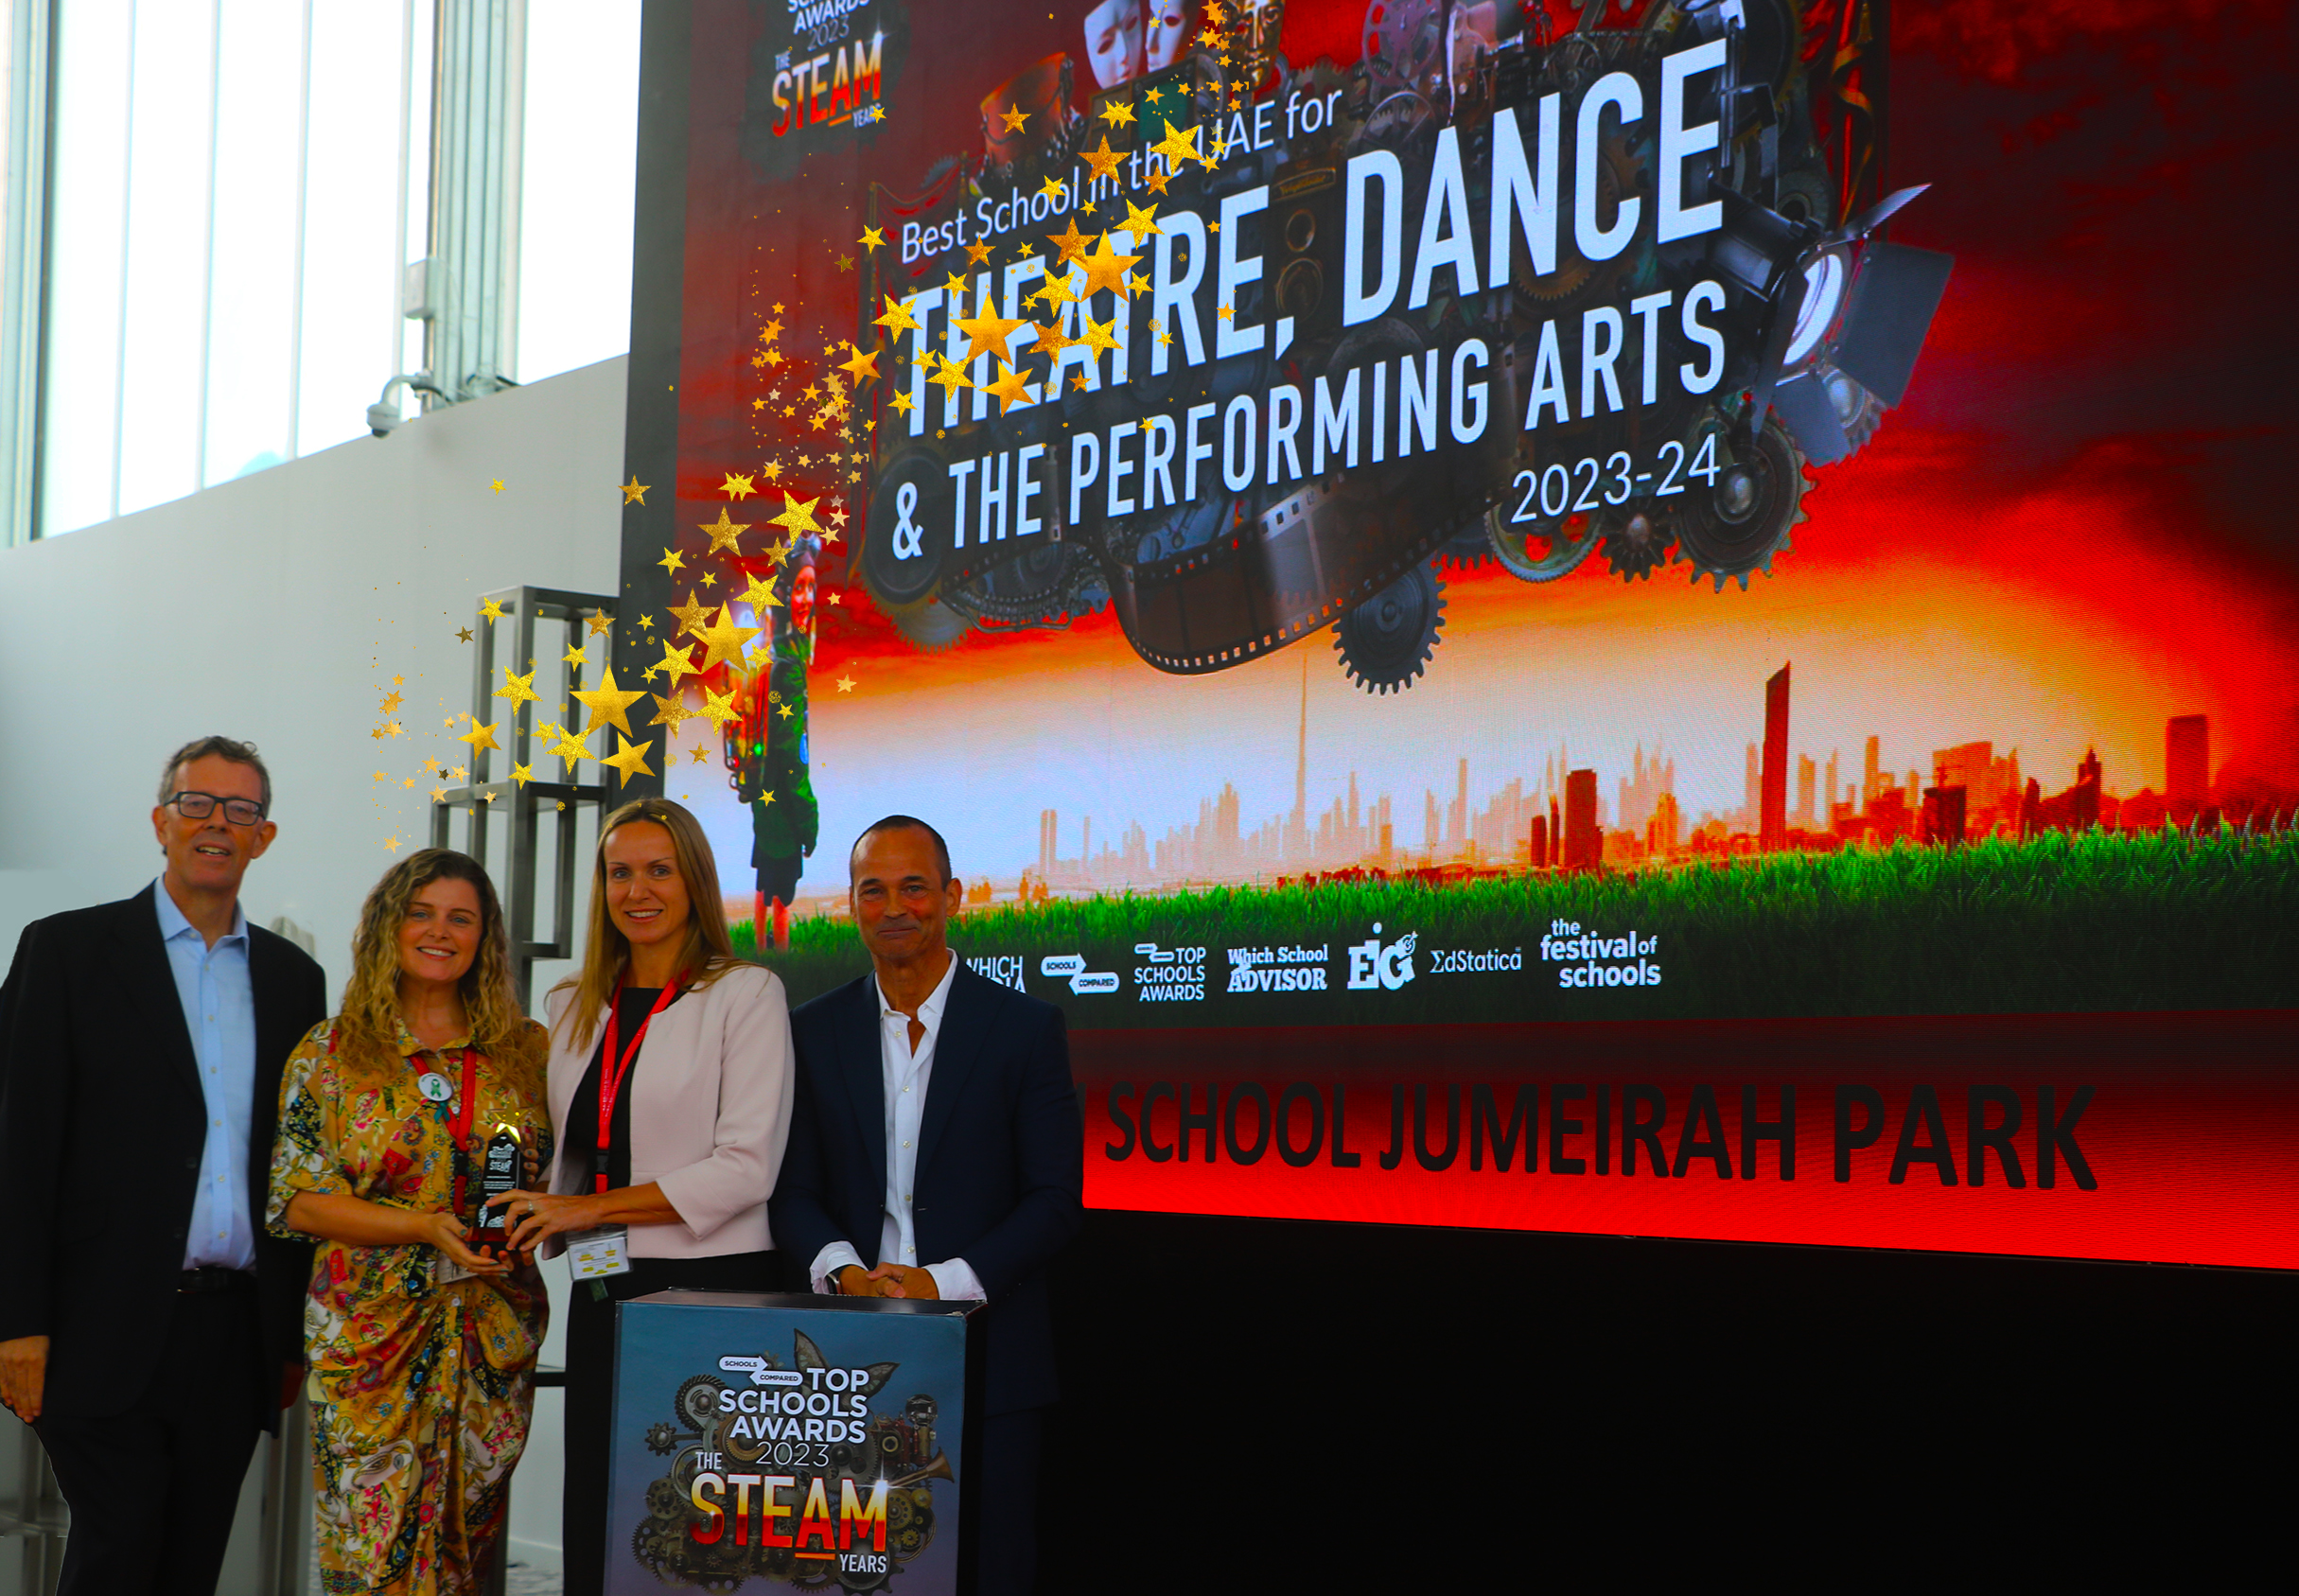 Die Dubai British School Jumeirah Park wurde bei den Top Schools Awards 2024 als beste Schule für Theater, Tanz und darstellende Kunst ausgezeichnet